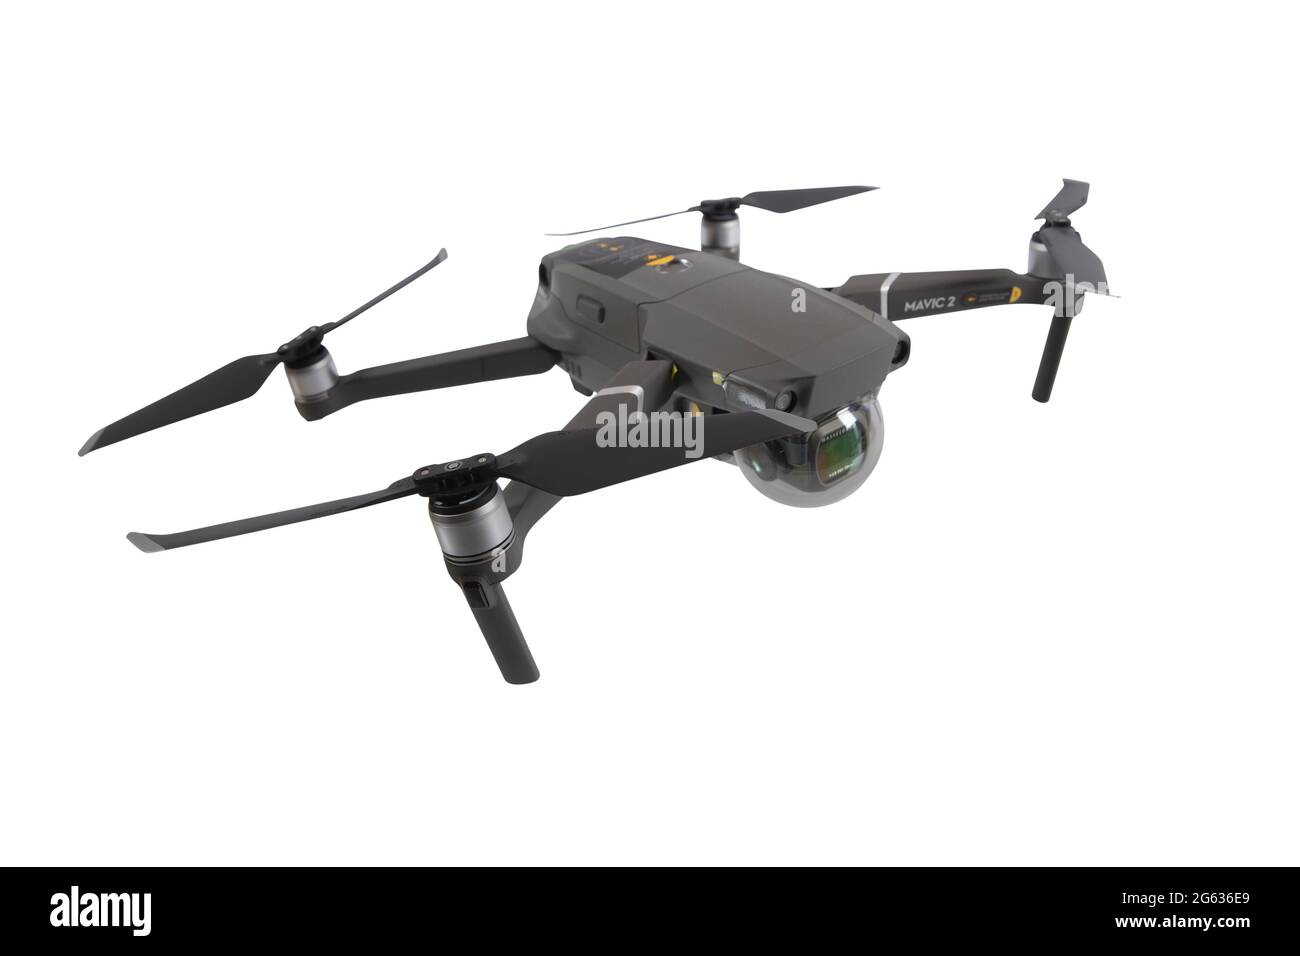 Dohne DJI Mavic 2 Pro mit Hasselblad Kamera für 4K Videoaufnahmen und 20MB  Fotoaufnahmen. Die Drohne zählt zu den Flugapparaten mit den qualitativ hoc  Stock Photo - Alamy